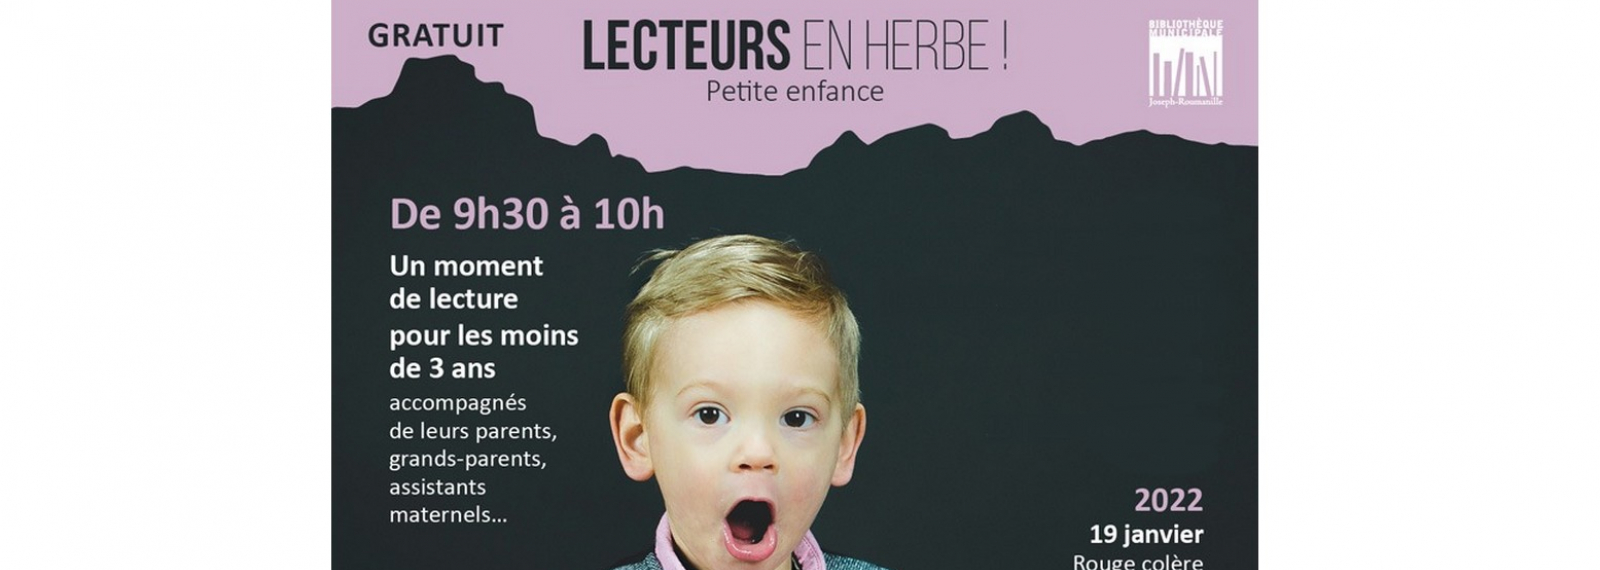 Lecture pour les moins de 3 ans à la Bibliothèque Municipale de Saint-Rémy-de-Provence